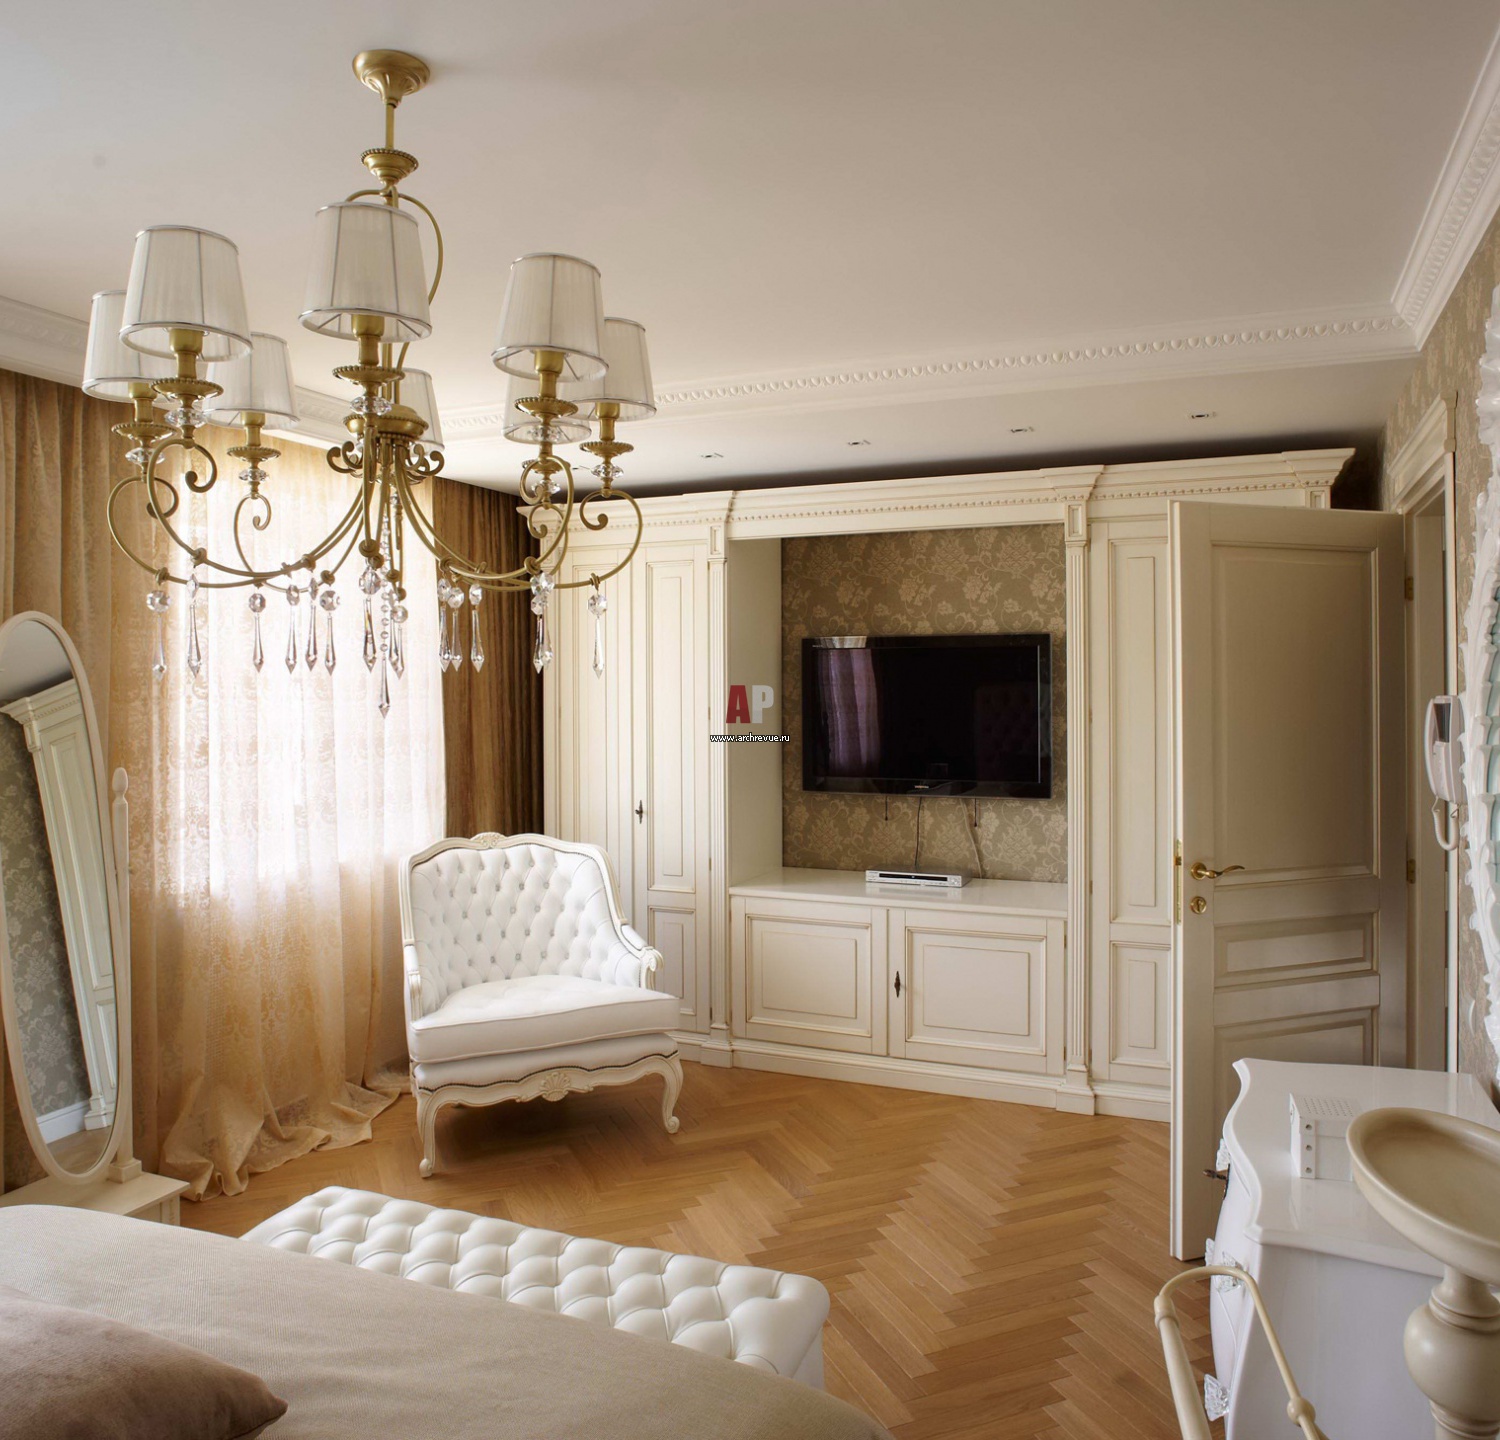 Квартира в классическом стиле — оформляем уютный дизайн (100 фото идей)